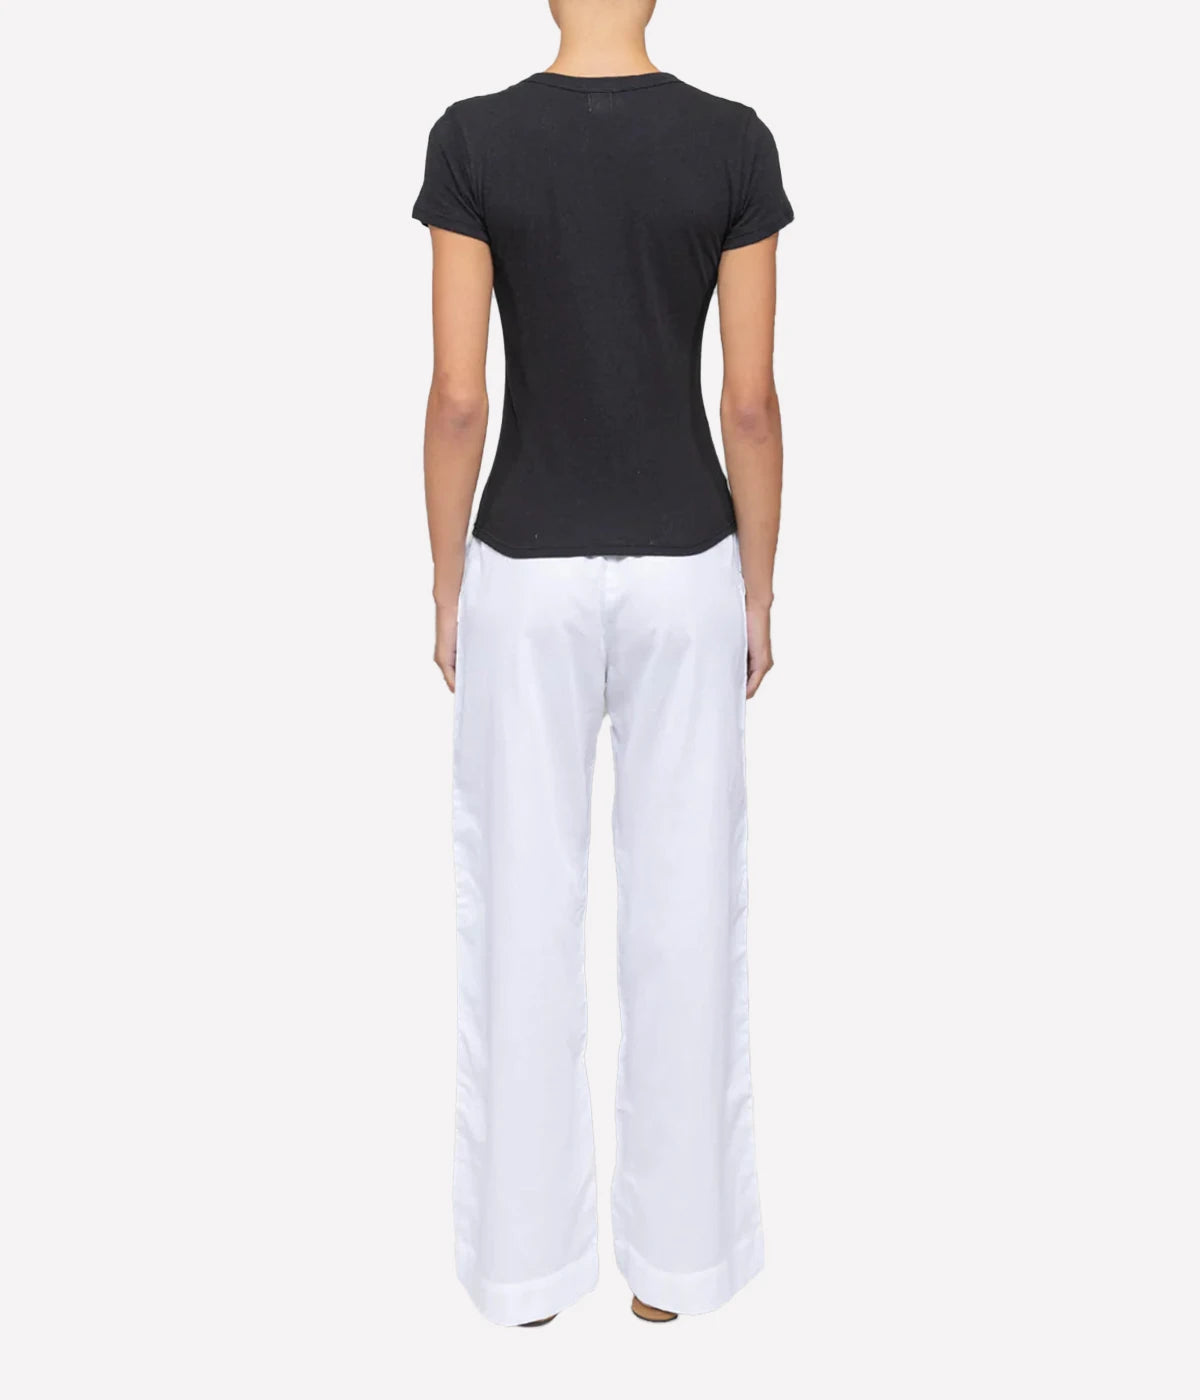 Yoko Pocket Pant in White